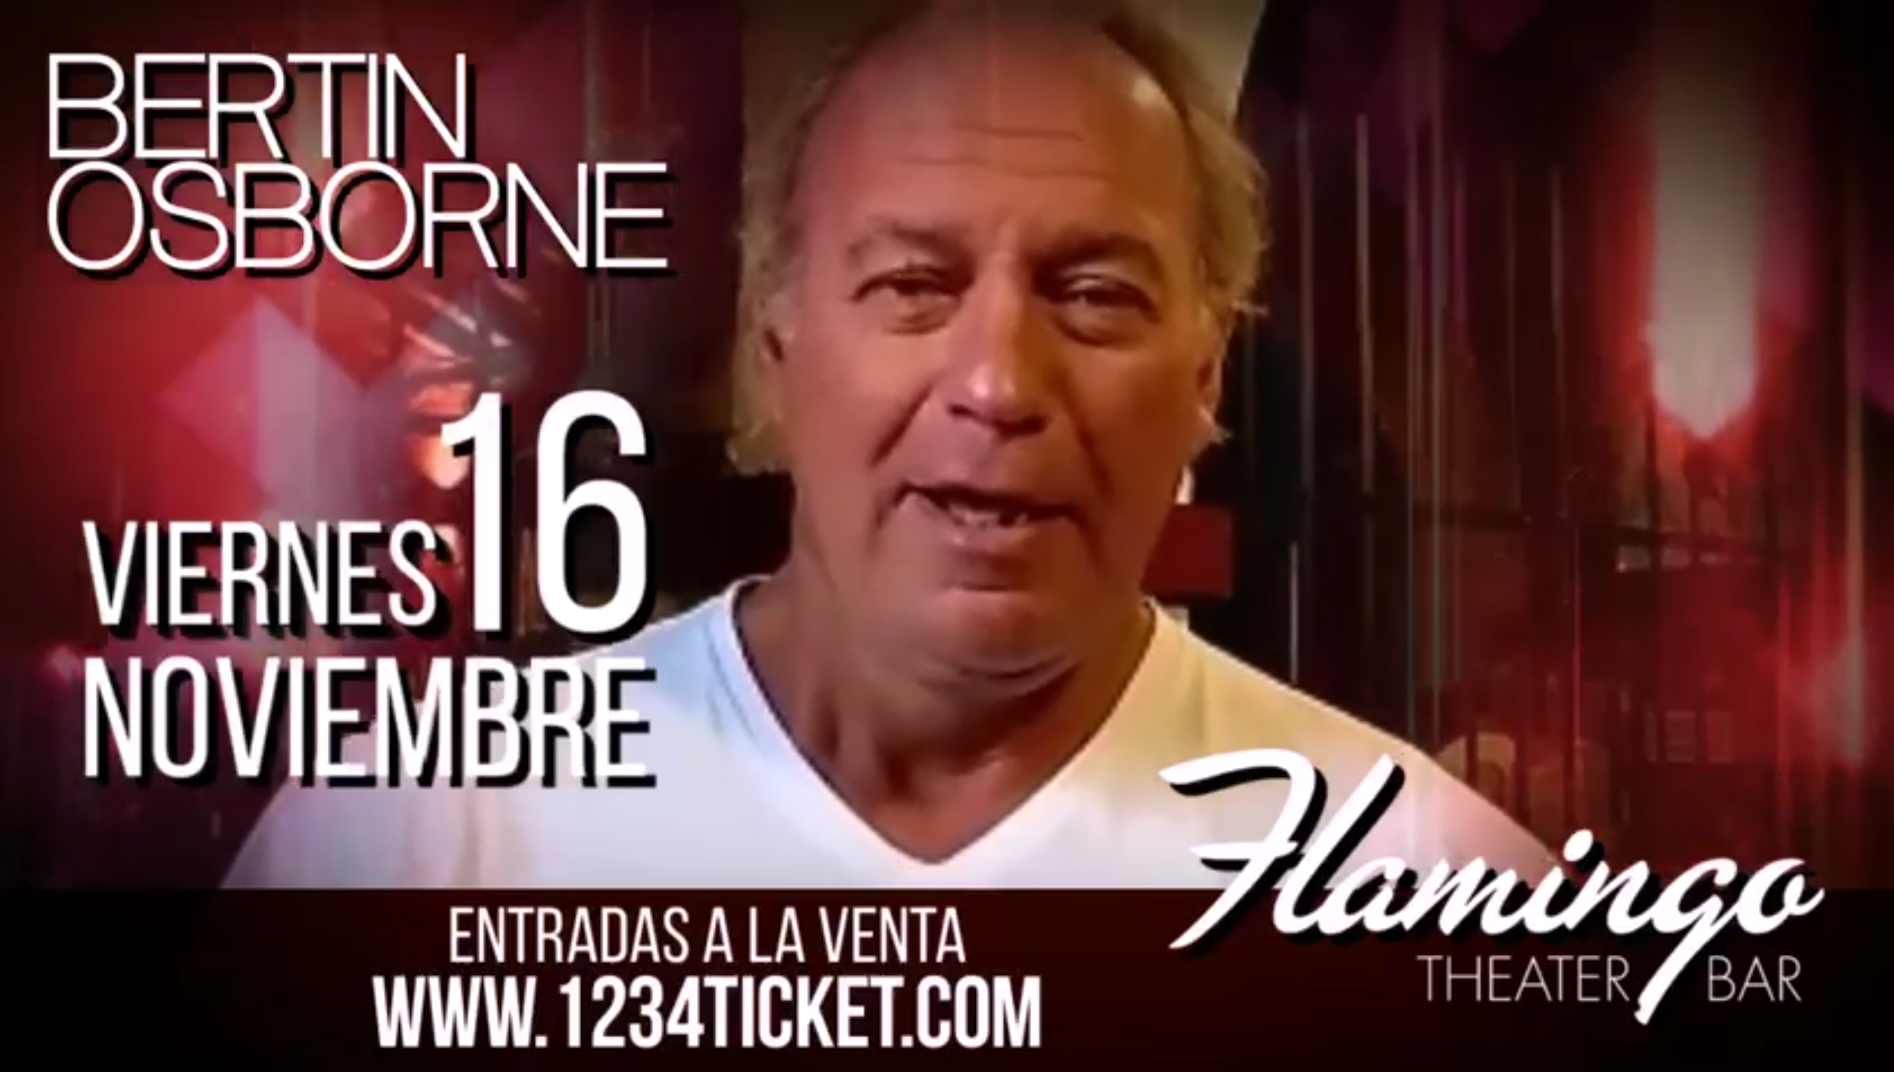 Bertín Osborne anuncia que realizará un concierto desde Miami en honor a Venezuela este #16Nov